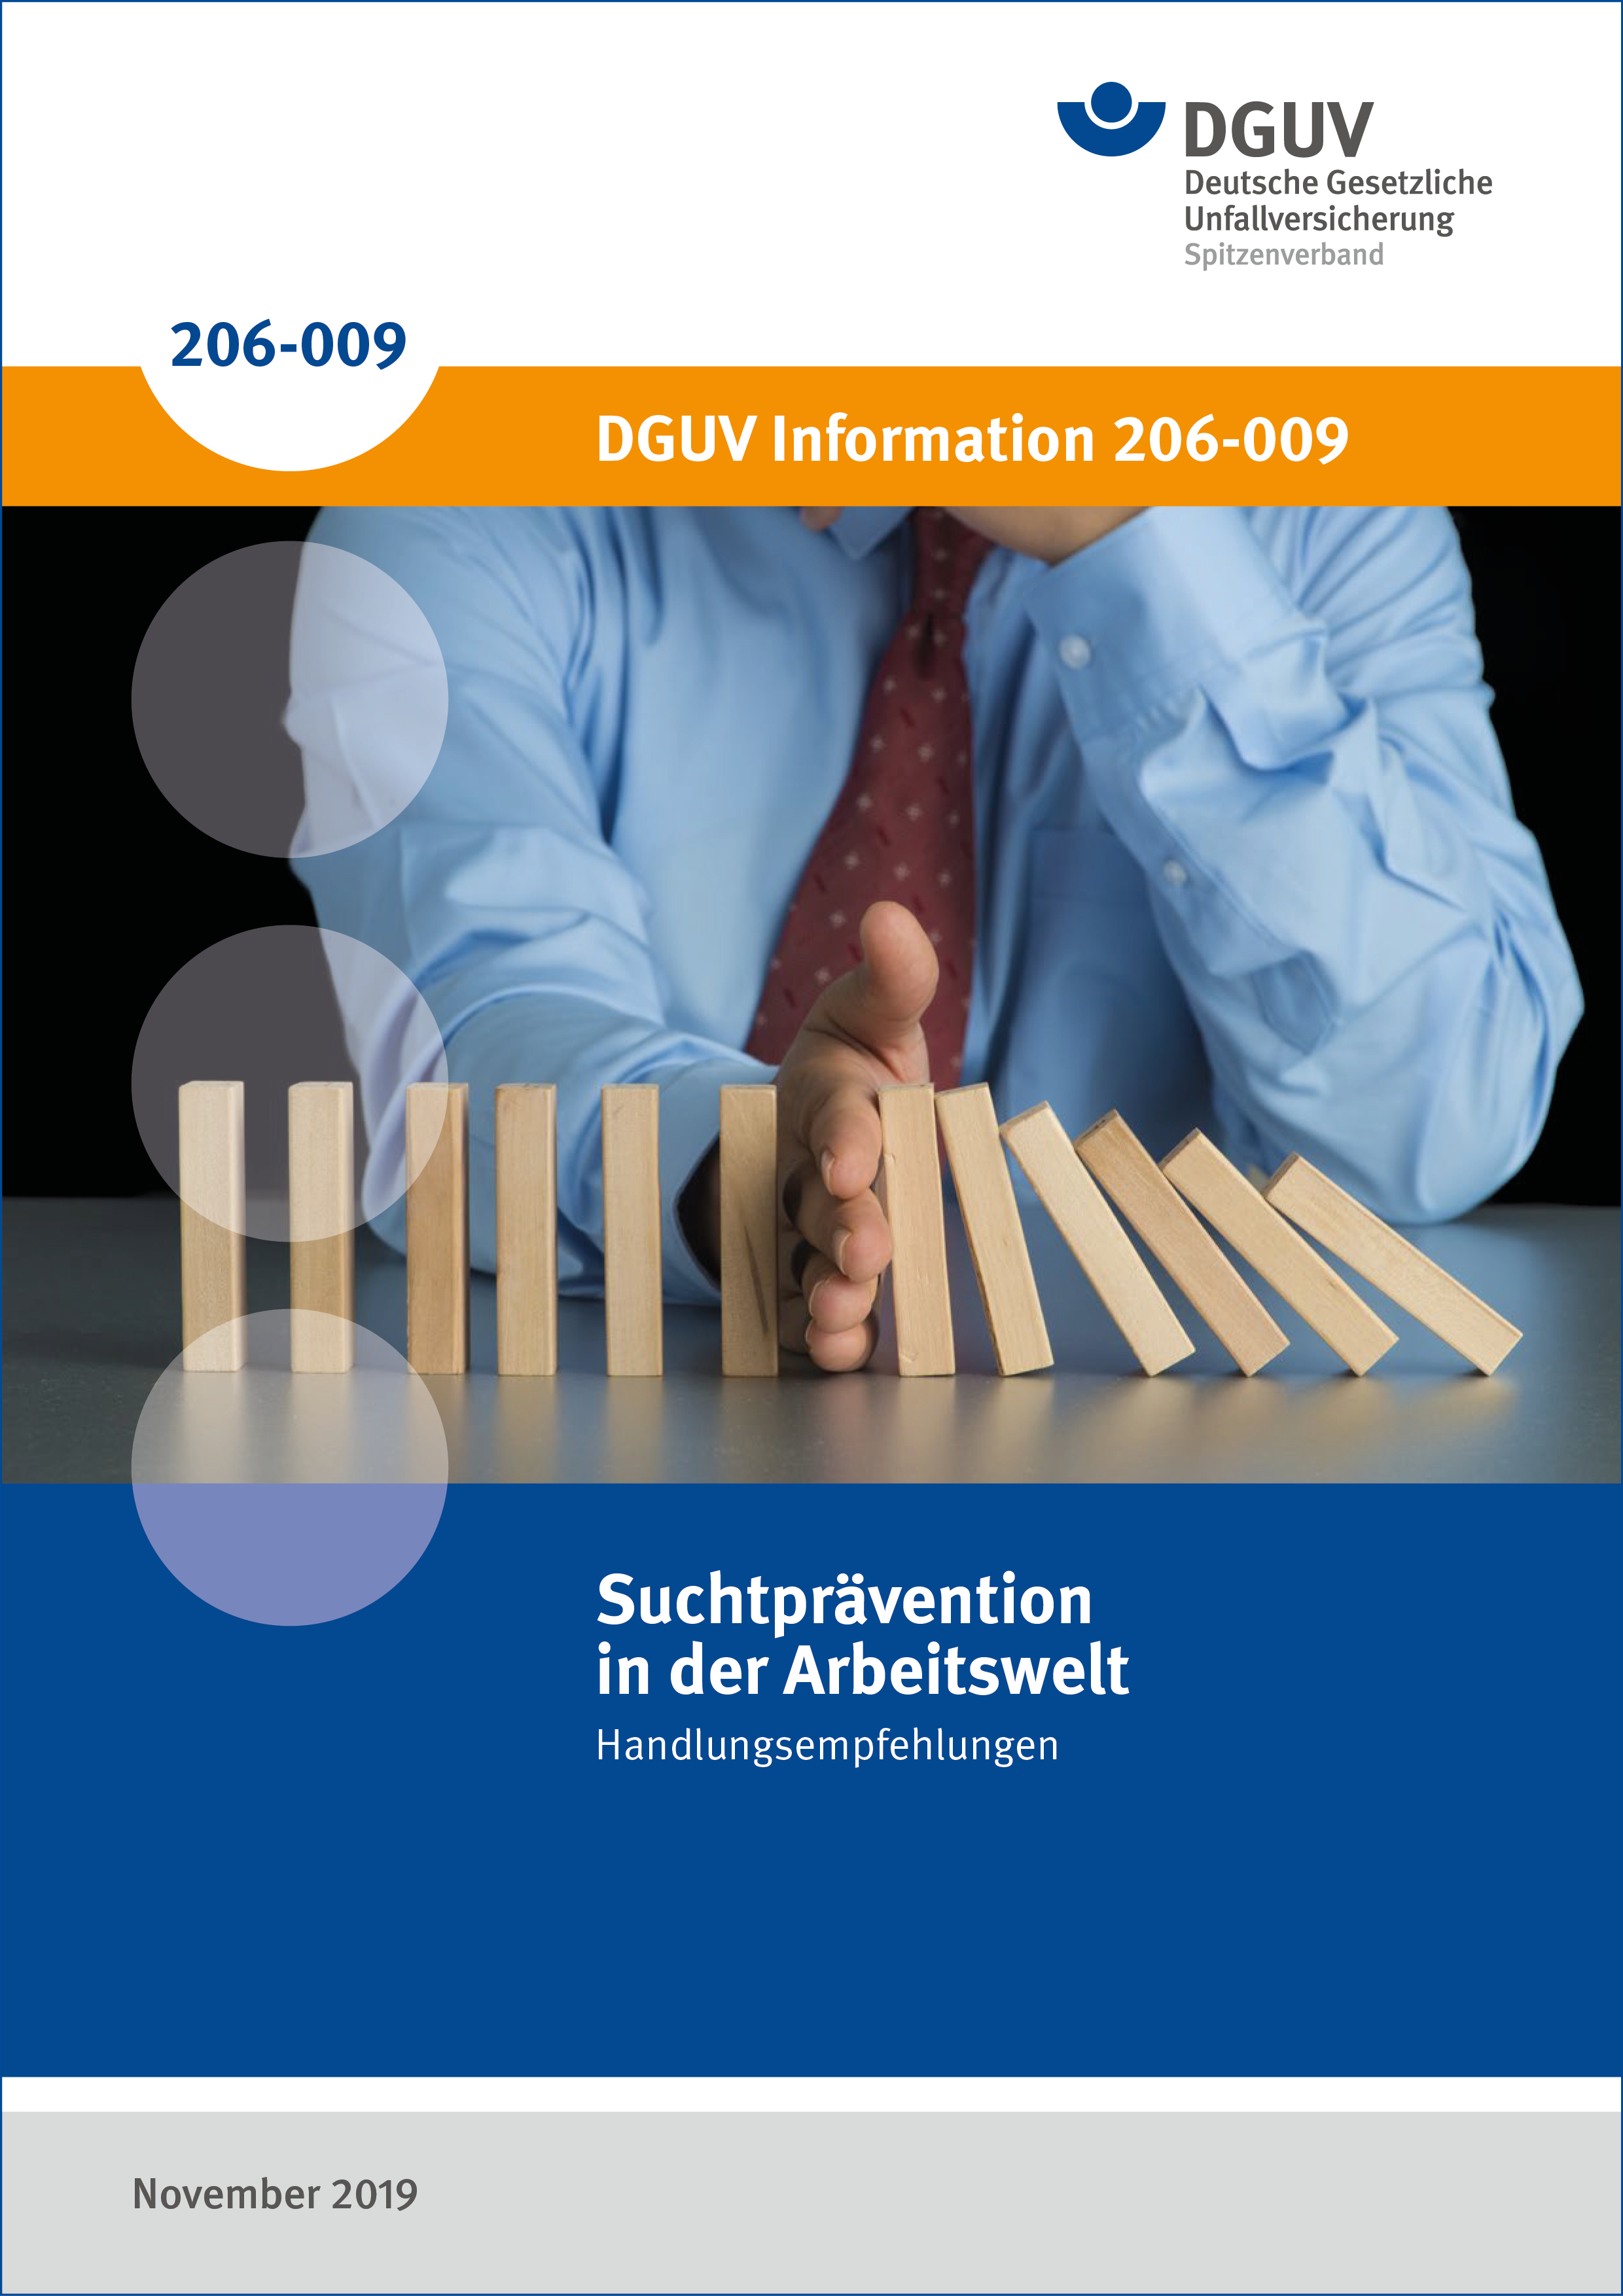 DGUV Information 206-009: Suchtprävention in der Arbeitswelt